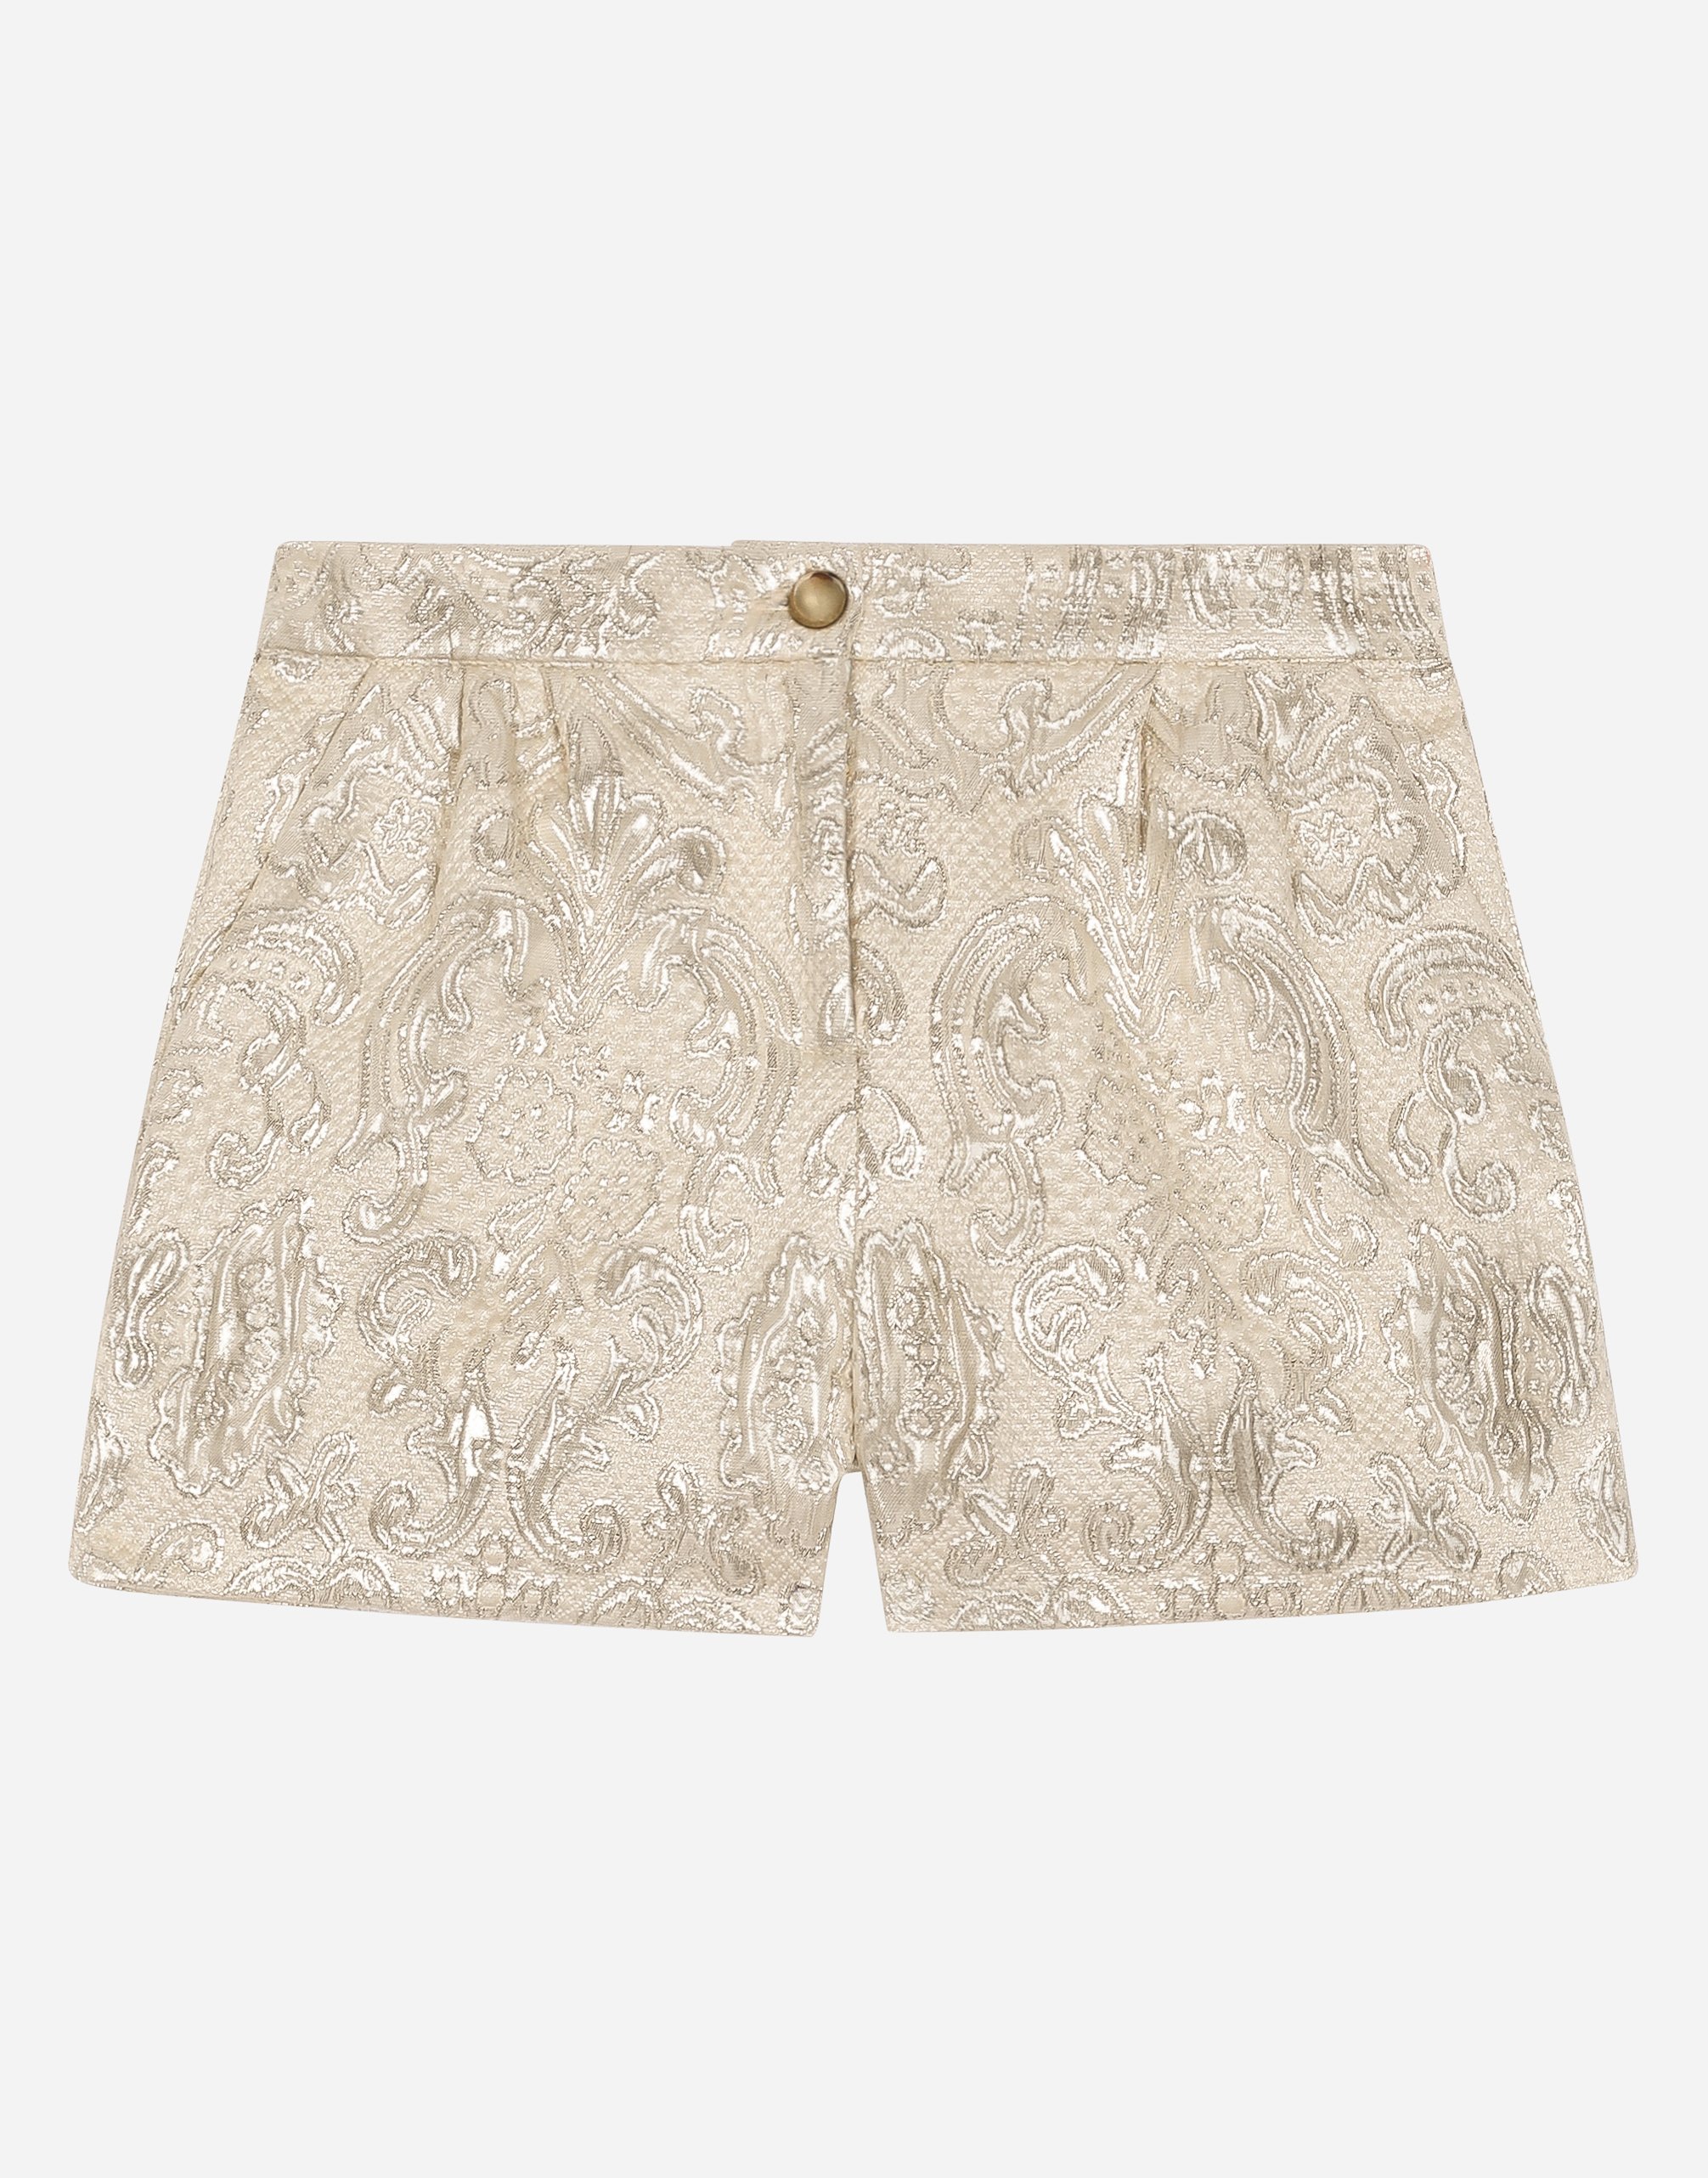 Dolce & Gabbana Brocade Shorts In Gold